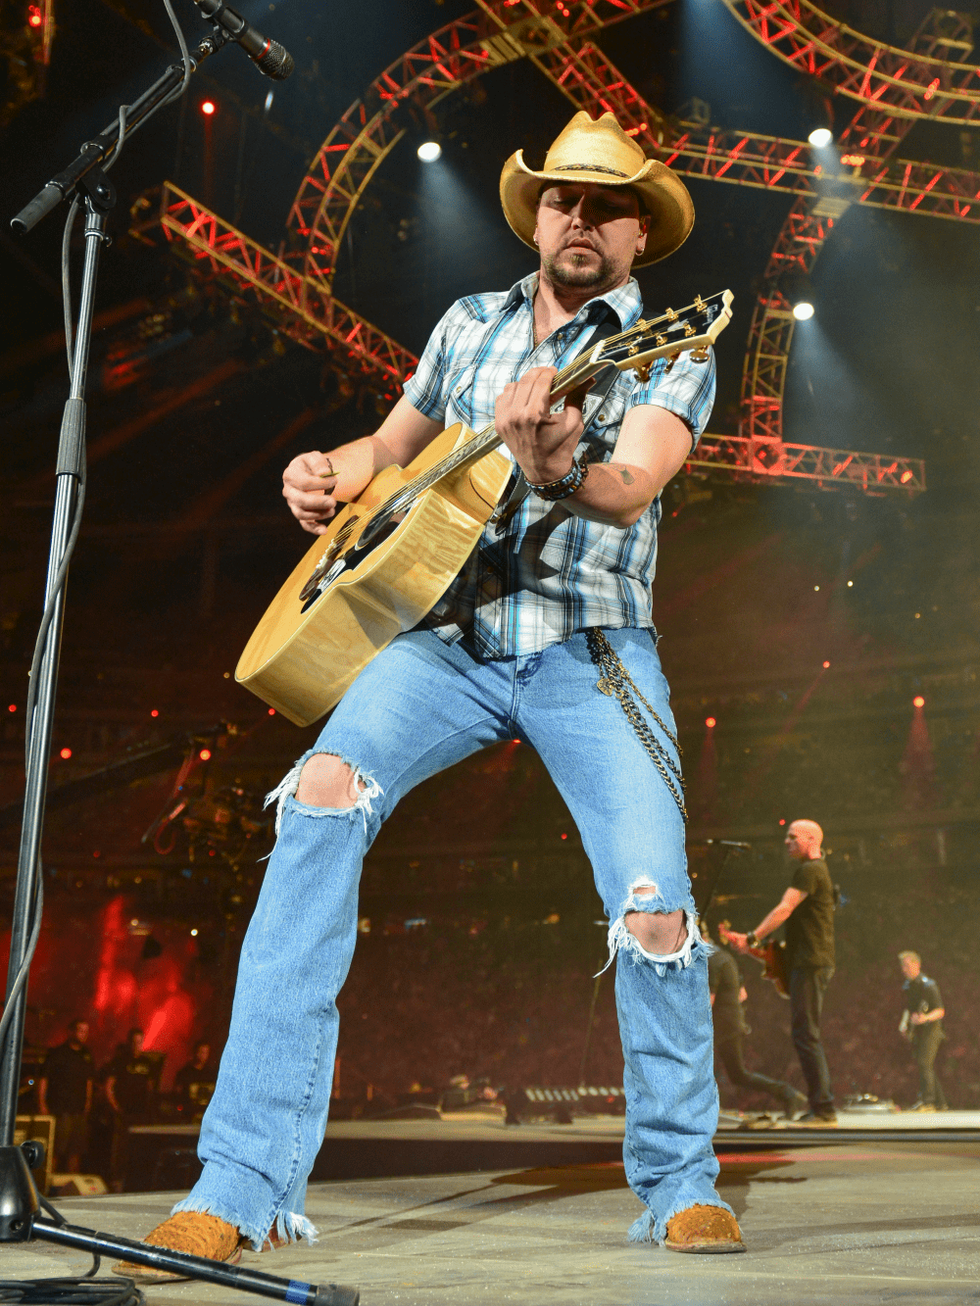 Jason Aldean celebrates redneck culture at rambunctious Rodeo concert -  CultureMap Houston